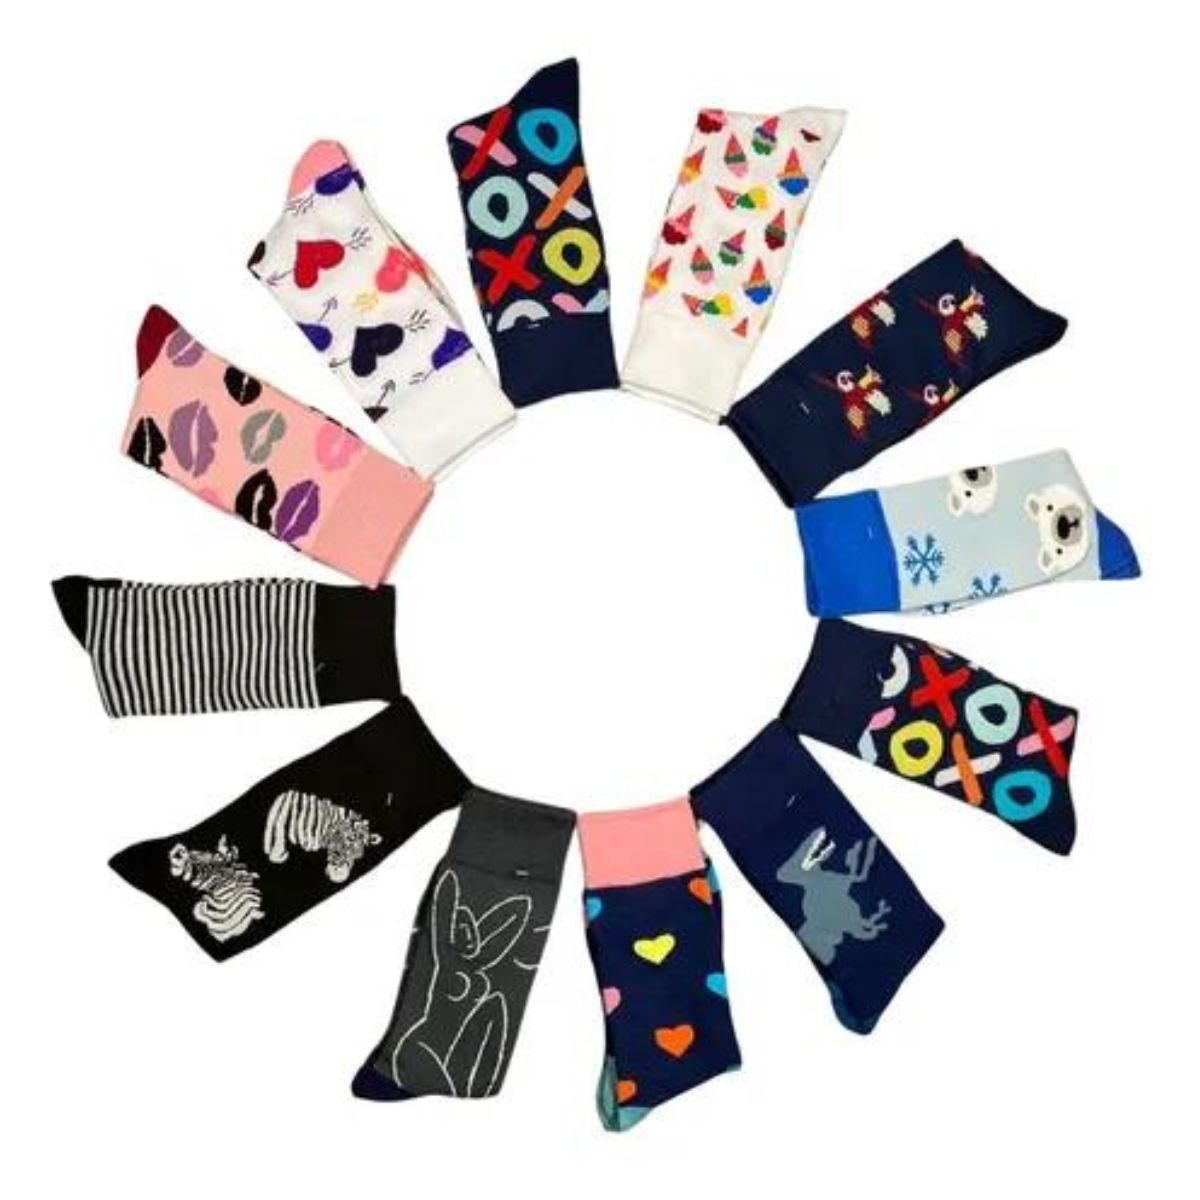 calcetas de vestir diseños dibujos divertidos (12 pares)